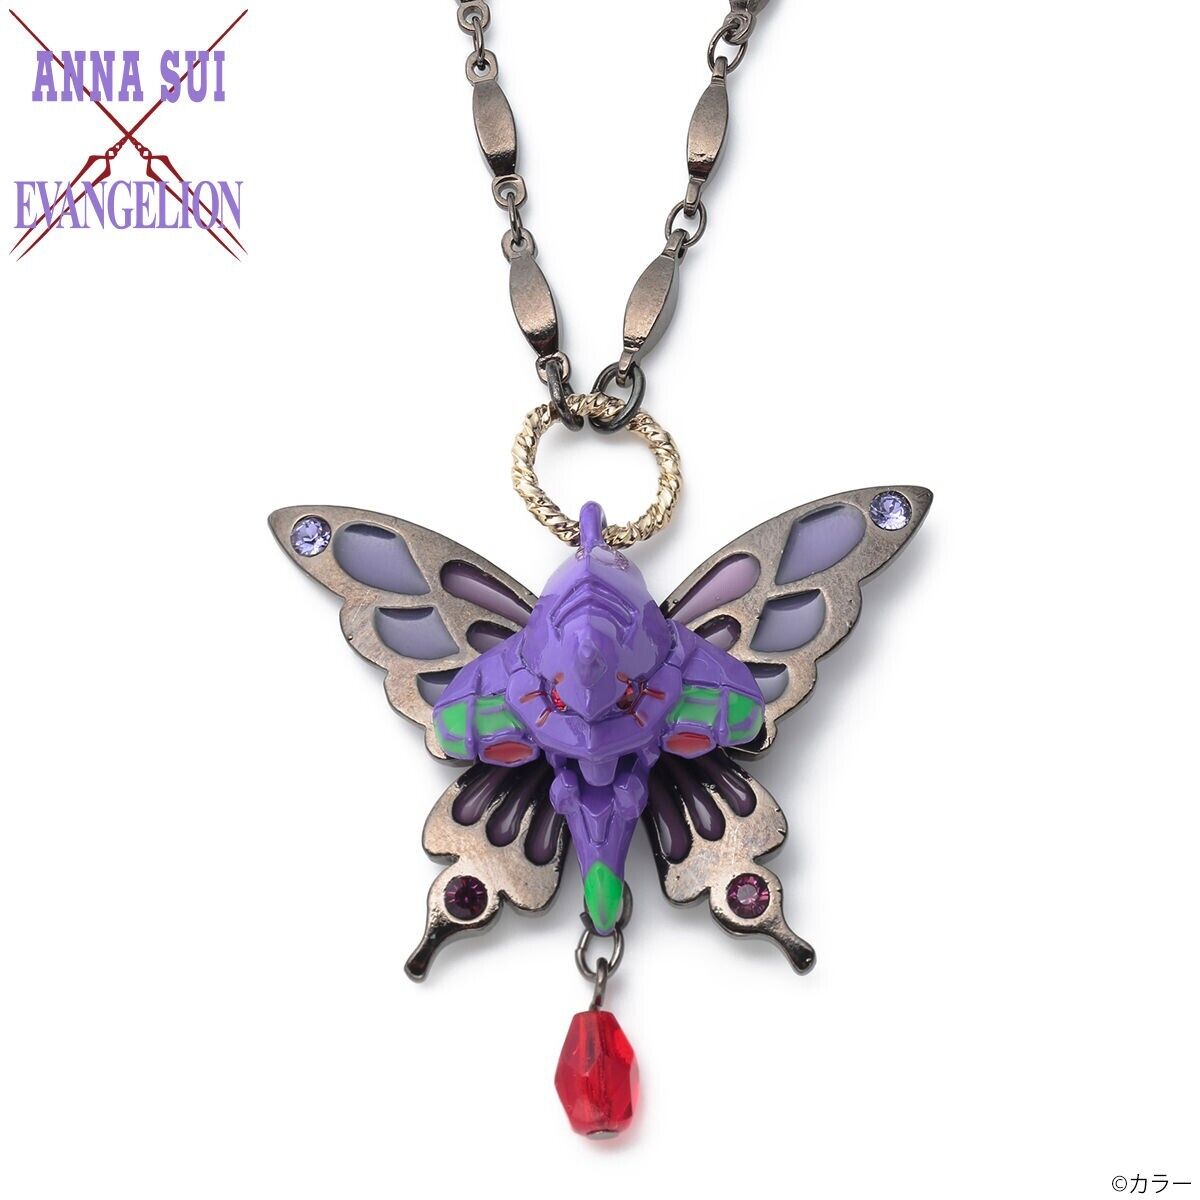 Evangelion Unit 01 Necklace Pendant ANNA SUI Jewelry Japan